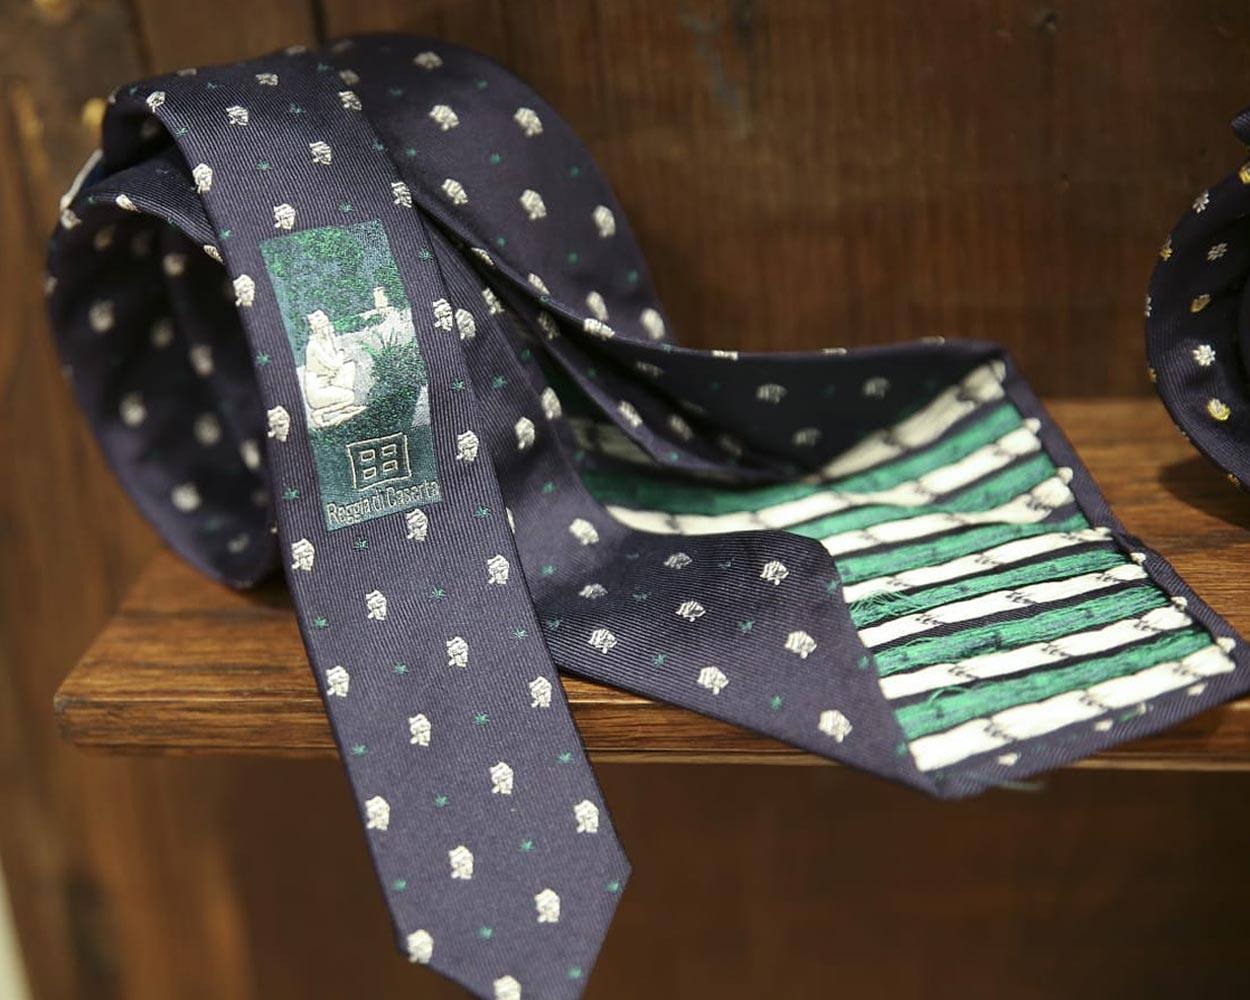 Cravatte limited edition Reggia di Caserta